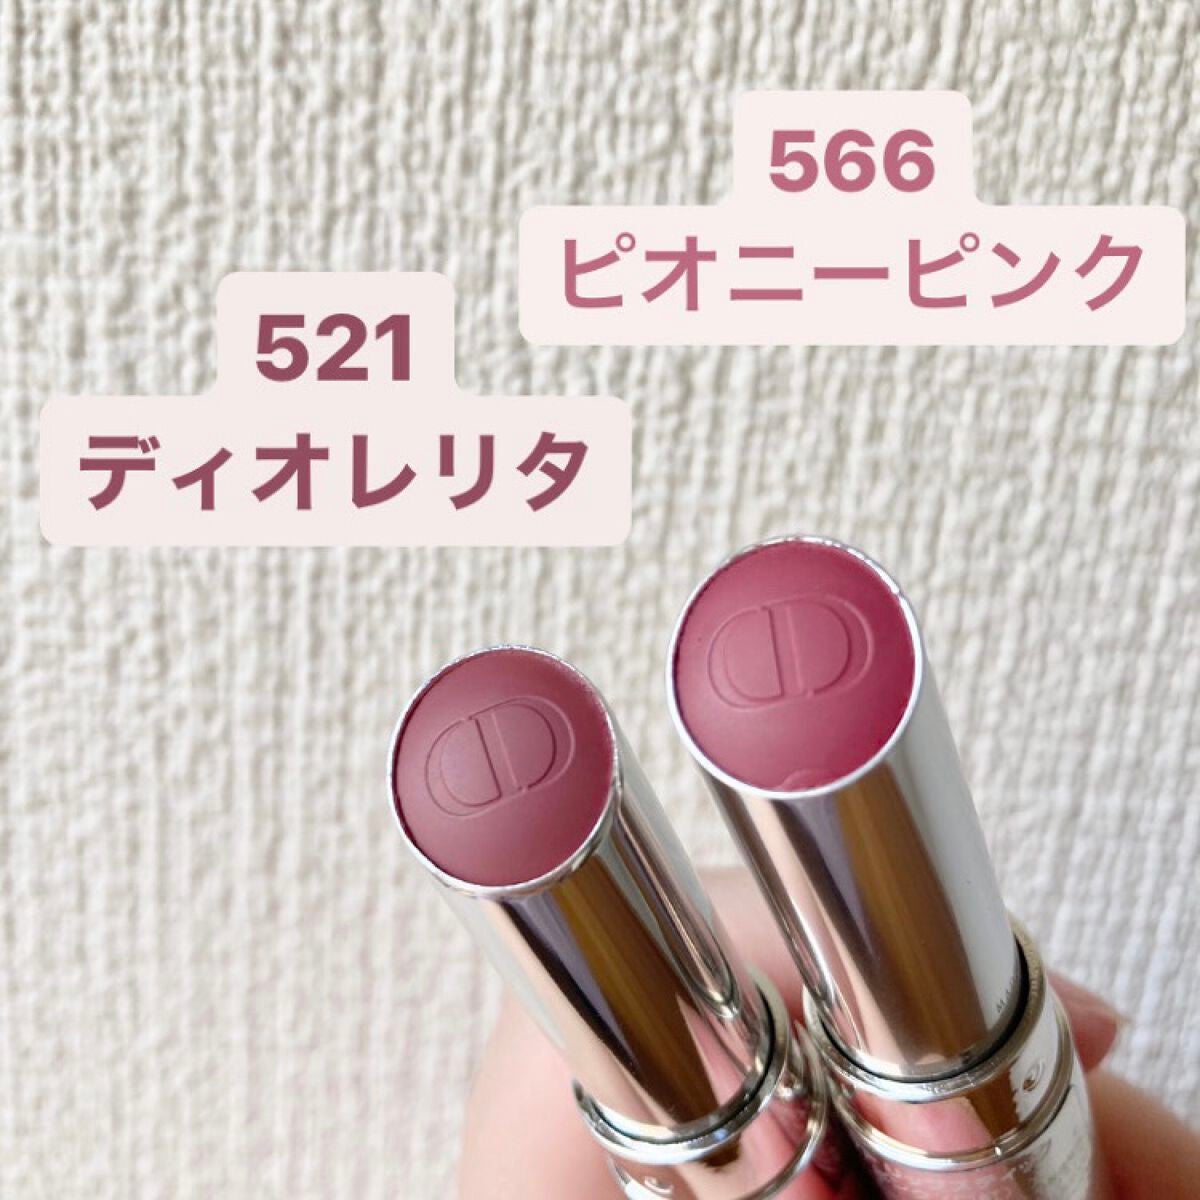 【新品未使用品】Dior アディクト　リップスティック　ピオニーピンク　限定色